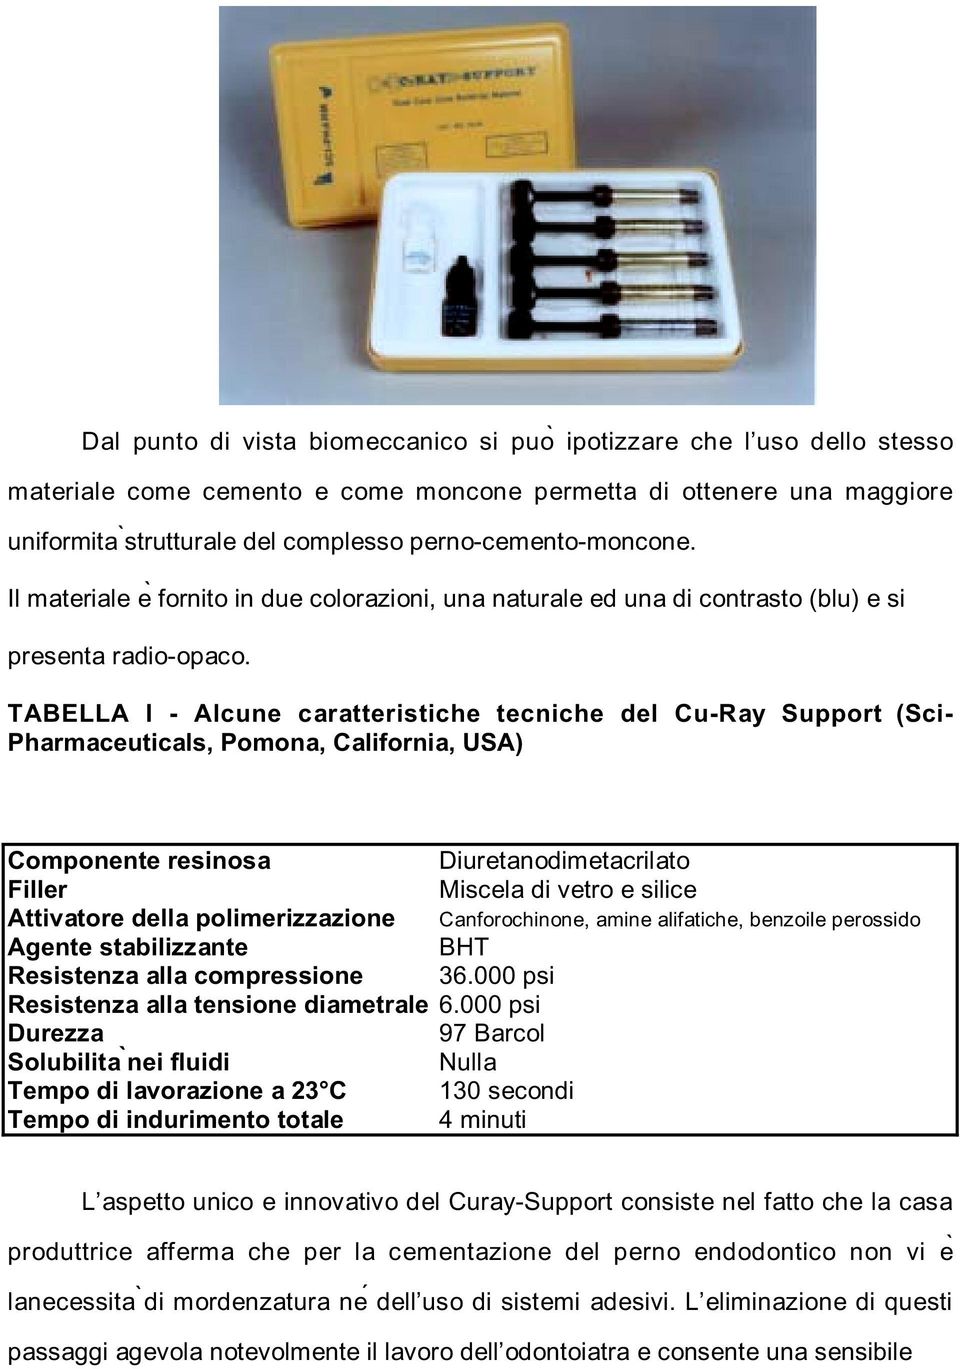 TABELLA I - Alcune caratteristiche tecniche del Cu-Ray Support (Sci- Pharmaceuticals, Pomona, California, USA) Componente resinosa Diuretanodimetacrilato Filler Miscela di vetro e silice Attivatore